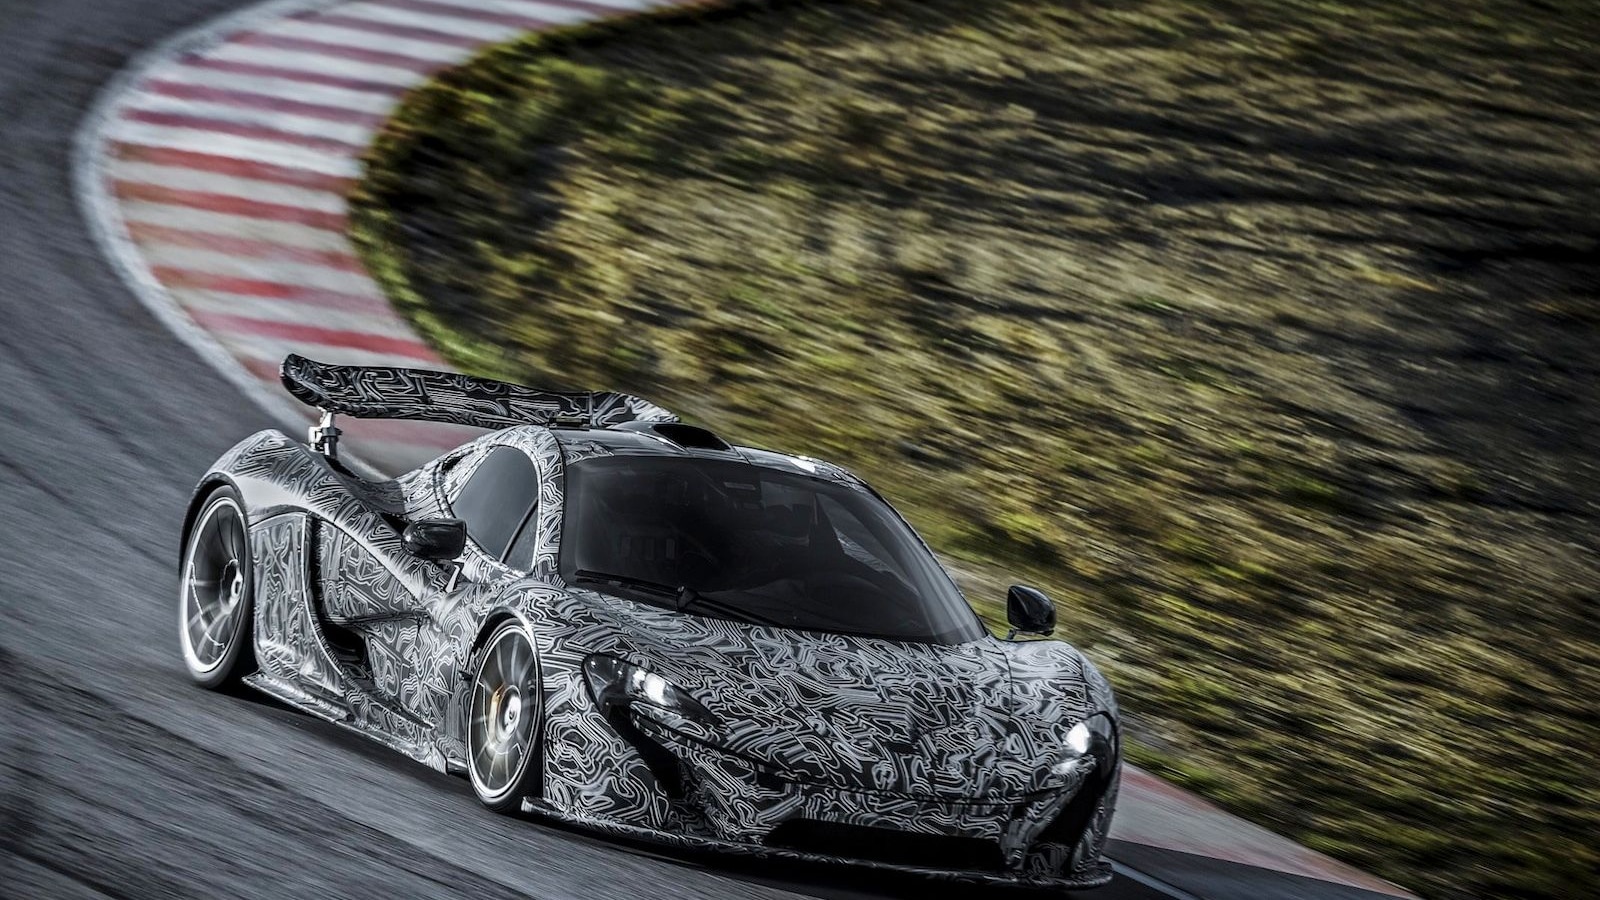 McLaren tests its P1 supercar - image: McLaren